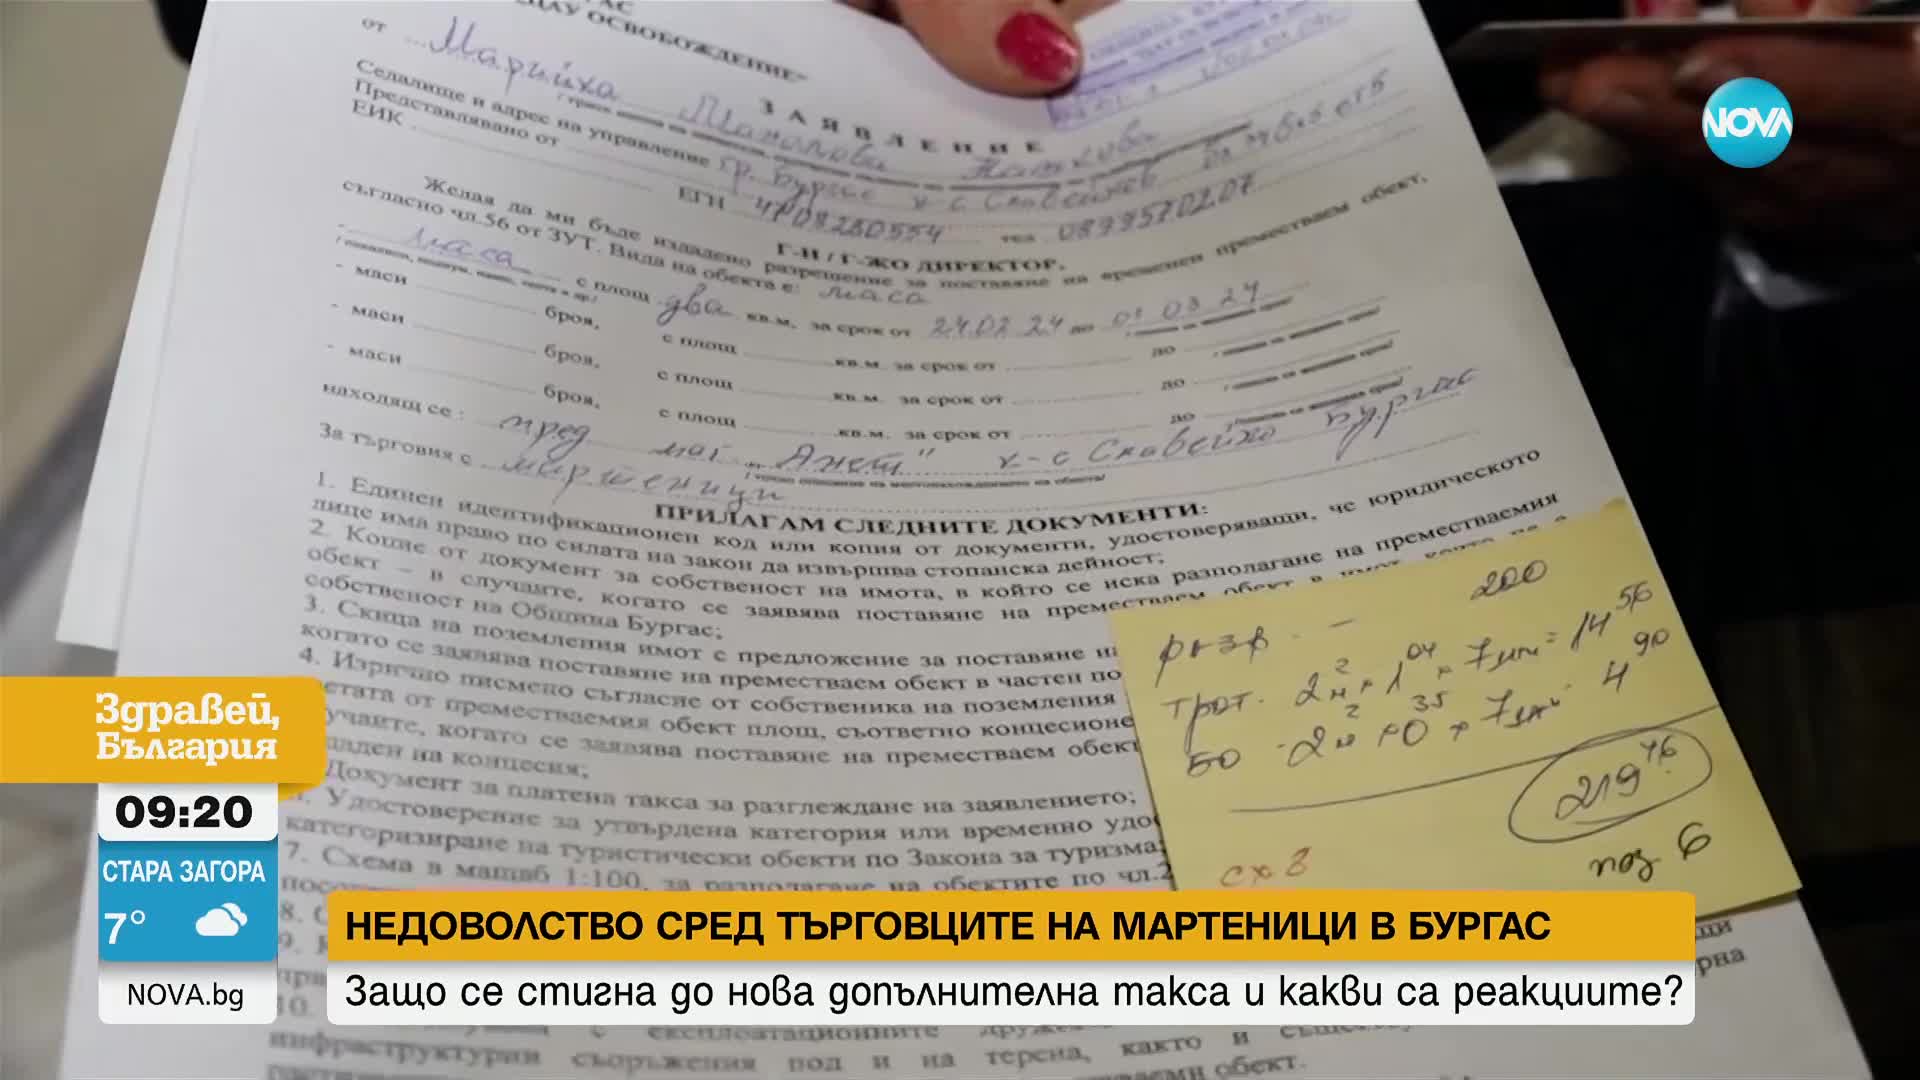 Недовослтво сред търговците на мартеници в Бургас заради нова такса